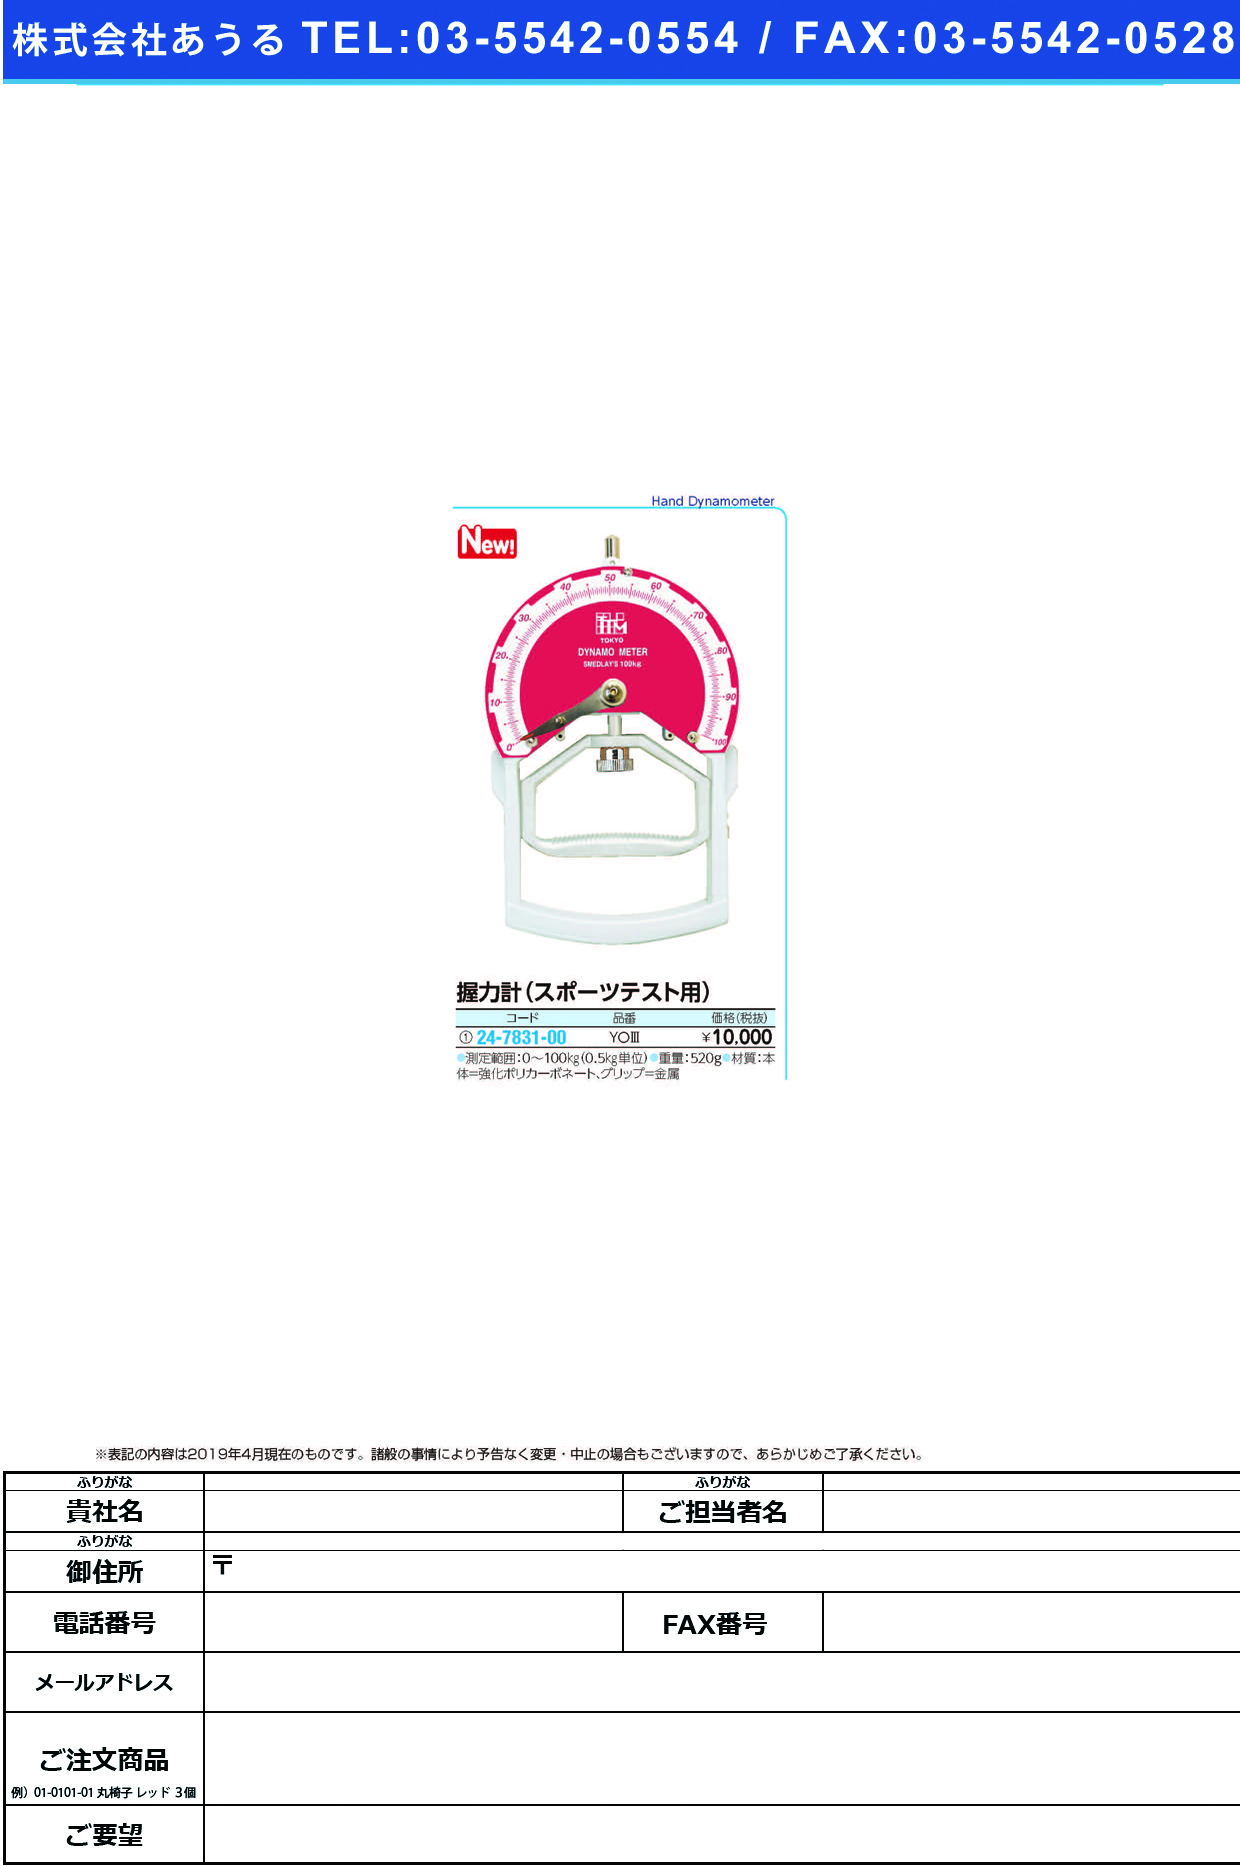 (24-7831-00)握力計（スポーツテスト用）YO3 ｱｸﾘｮｸｹｲ(ｽﾎﾟｰﾂﾃｽﾄﾖｳ)(ツツミ)【1台単位】【2019年カタログ商品】